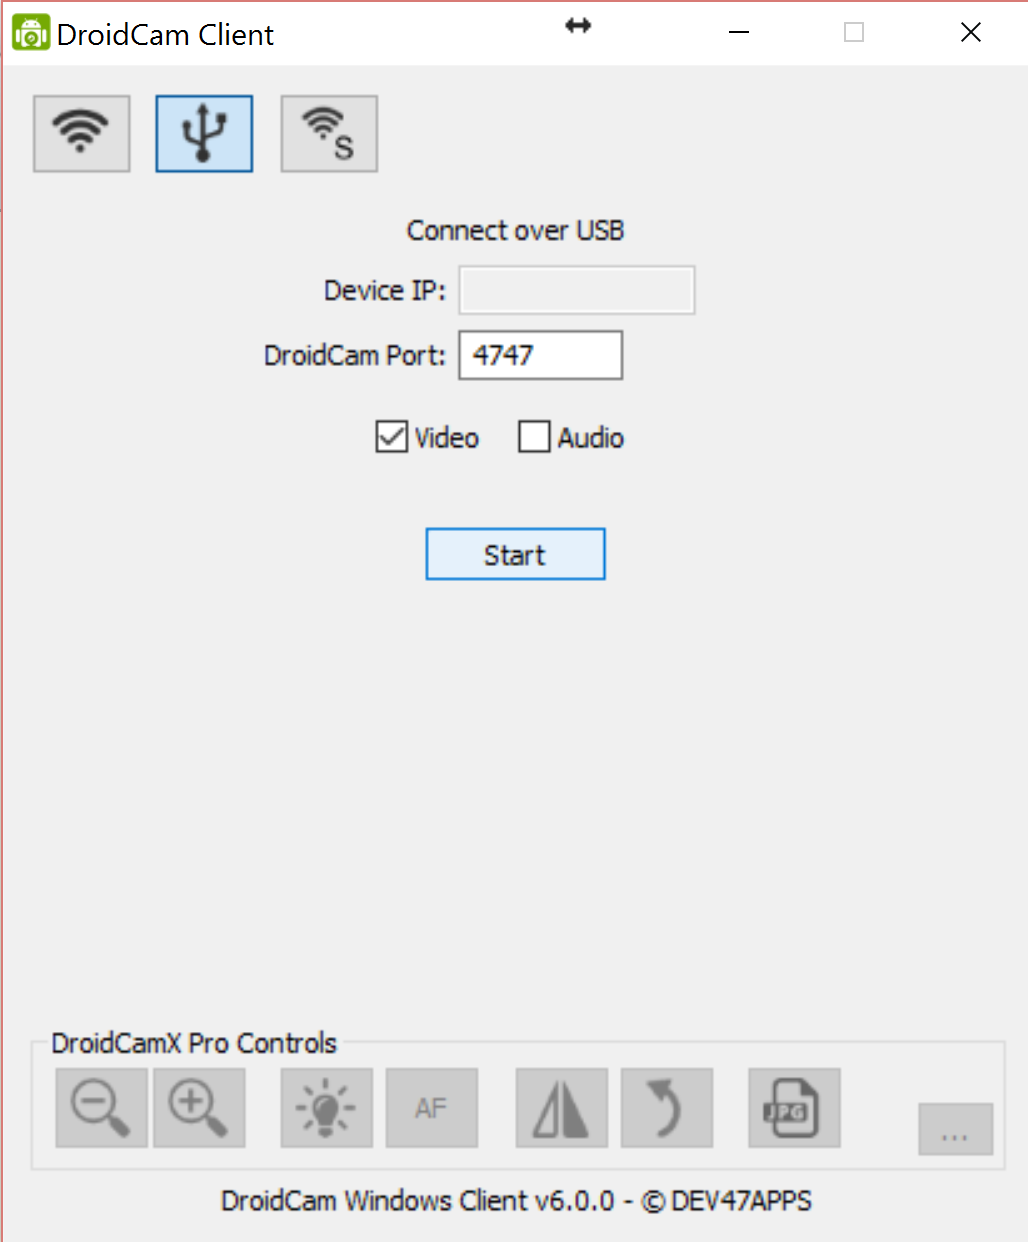 DroidCam Client USB